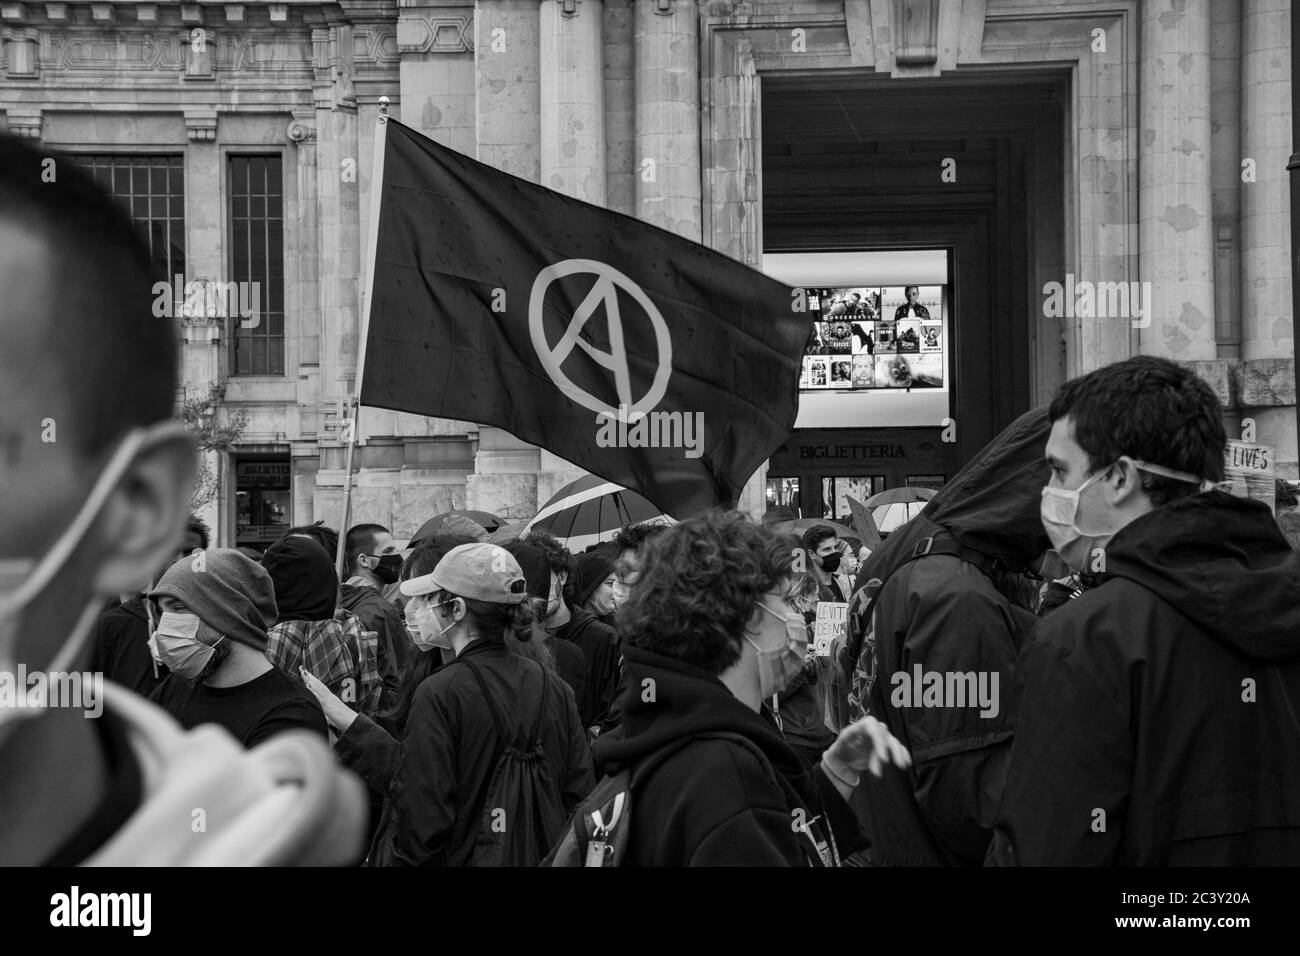 Bandiera anarchica che batte durante l'assemblea di protesta in solidarietà al movimento Black Lives Matter di fronte alla stazione centrale di Milano. Foto Stock